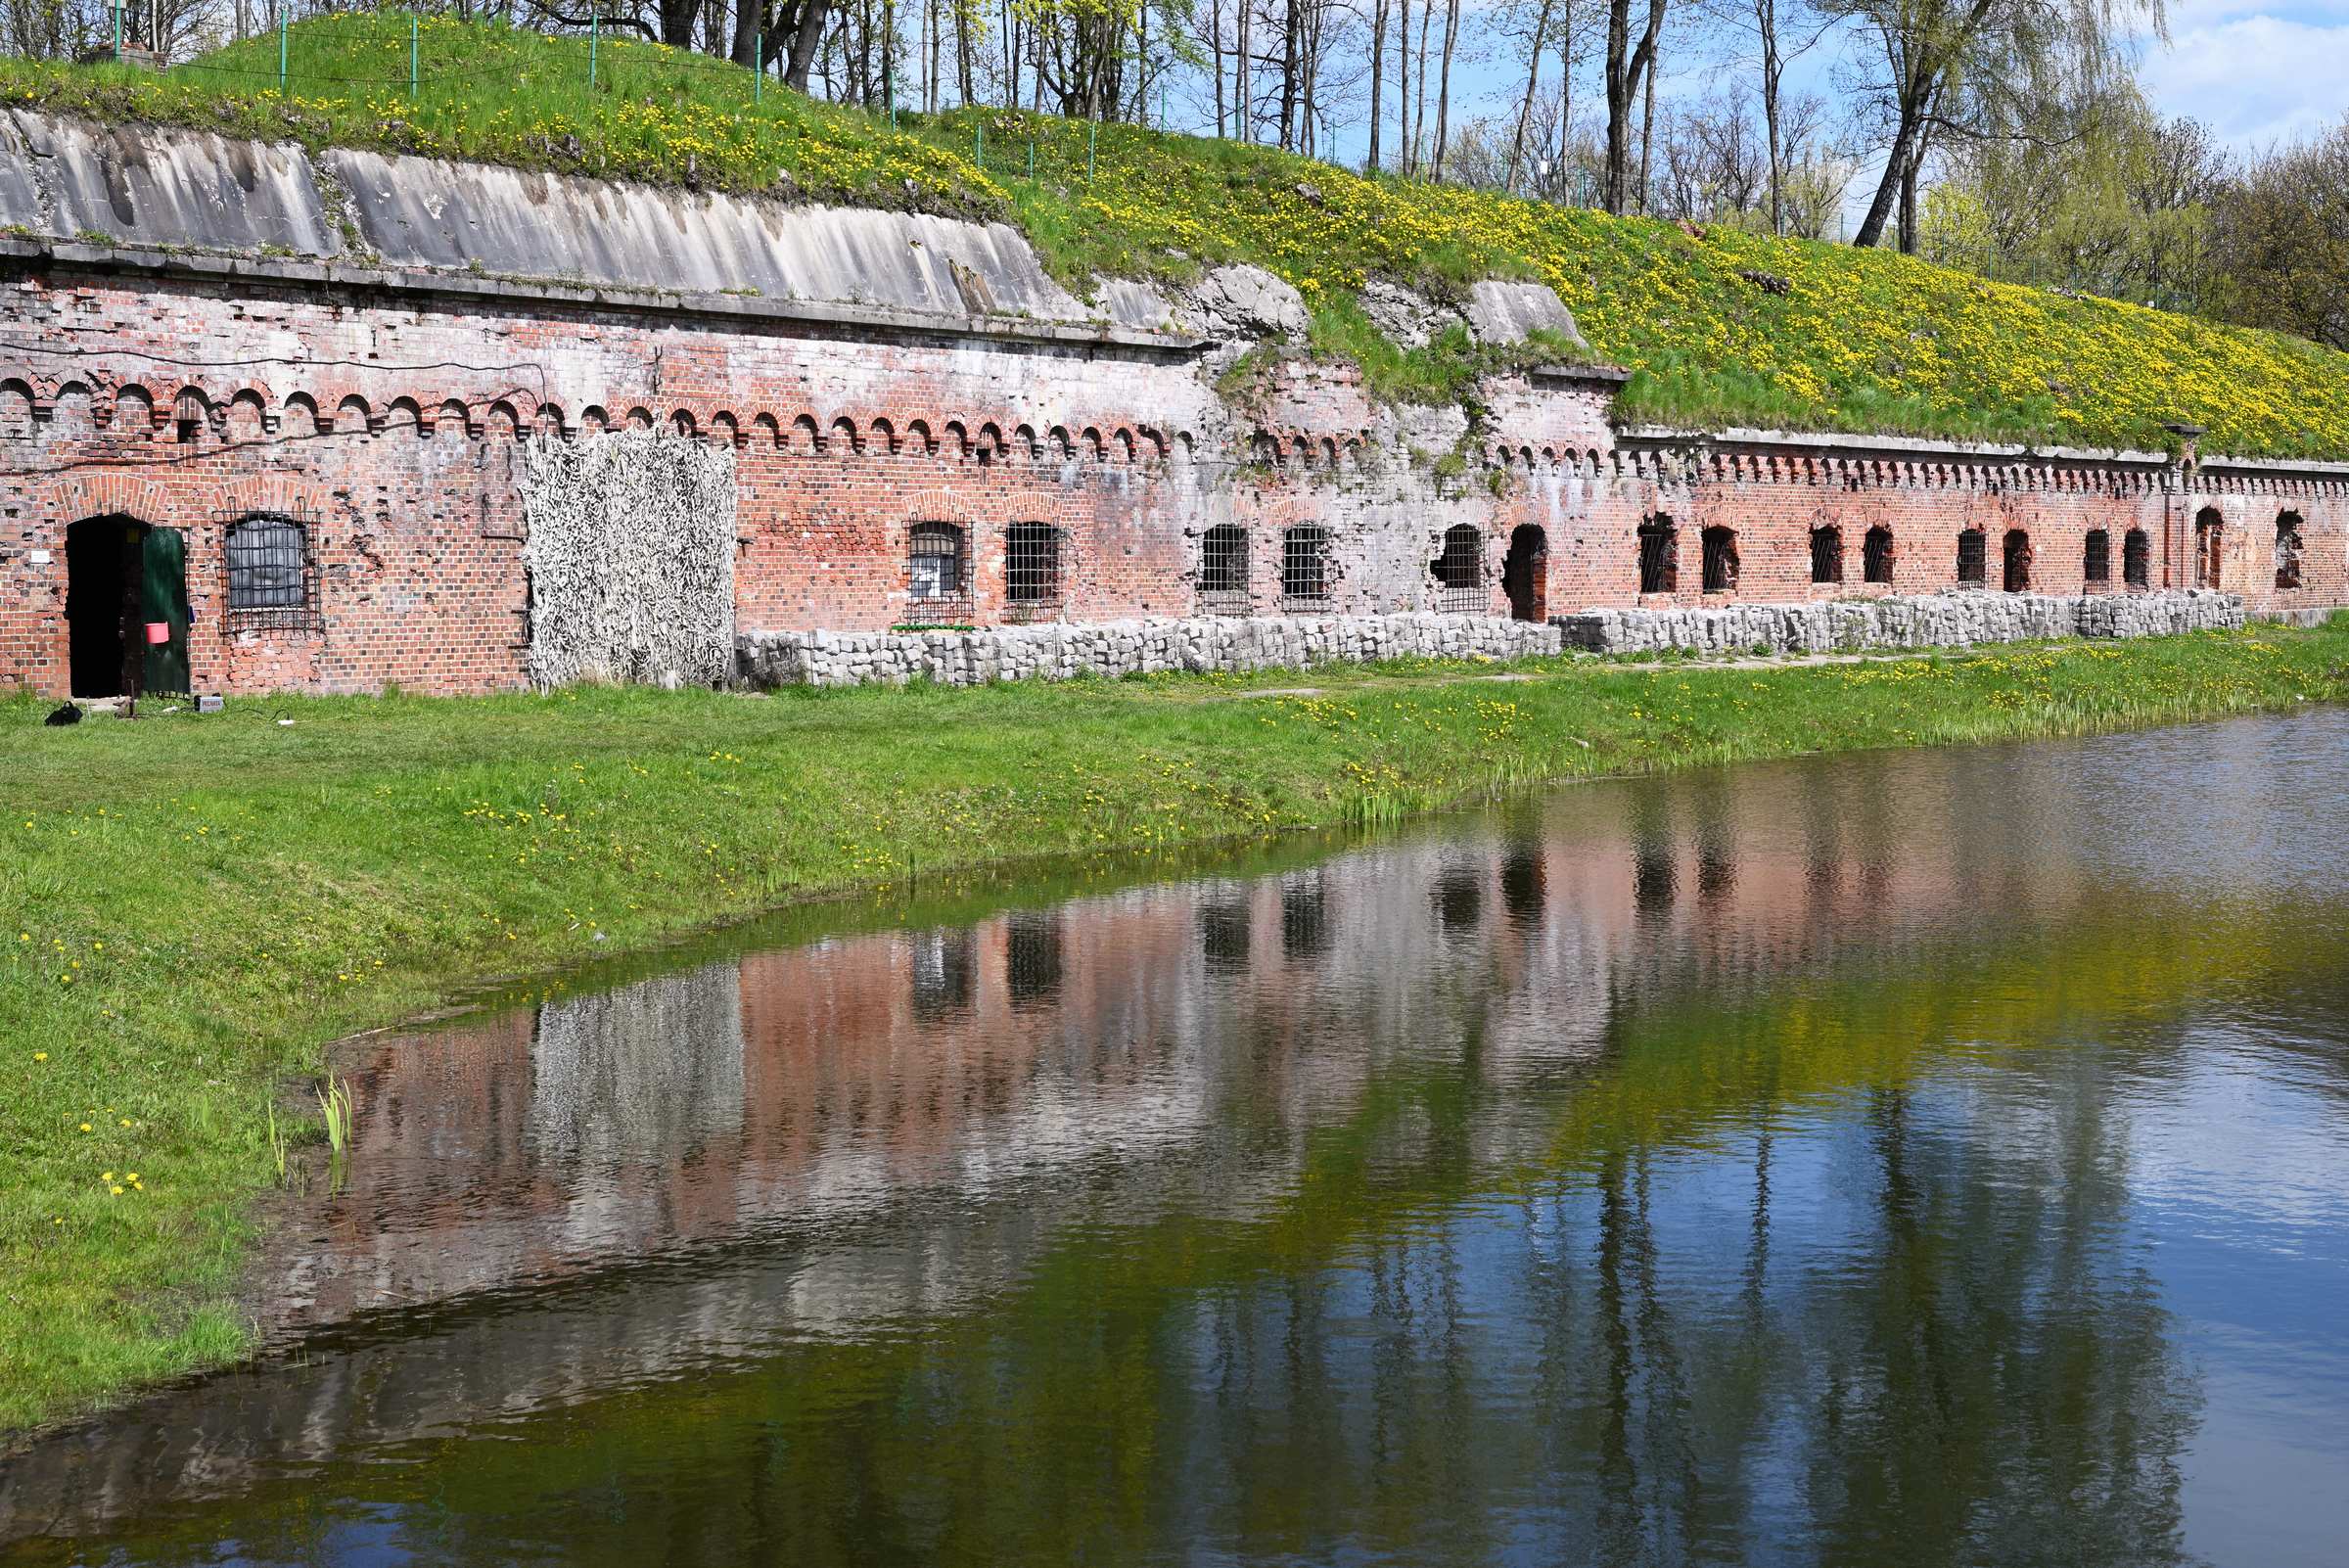 Калининград. Форт № 5 «Король Фридрих Вильгельм III». Вид на форт и ров с водой.